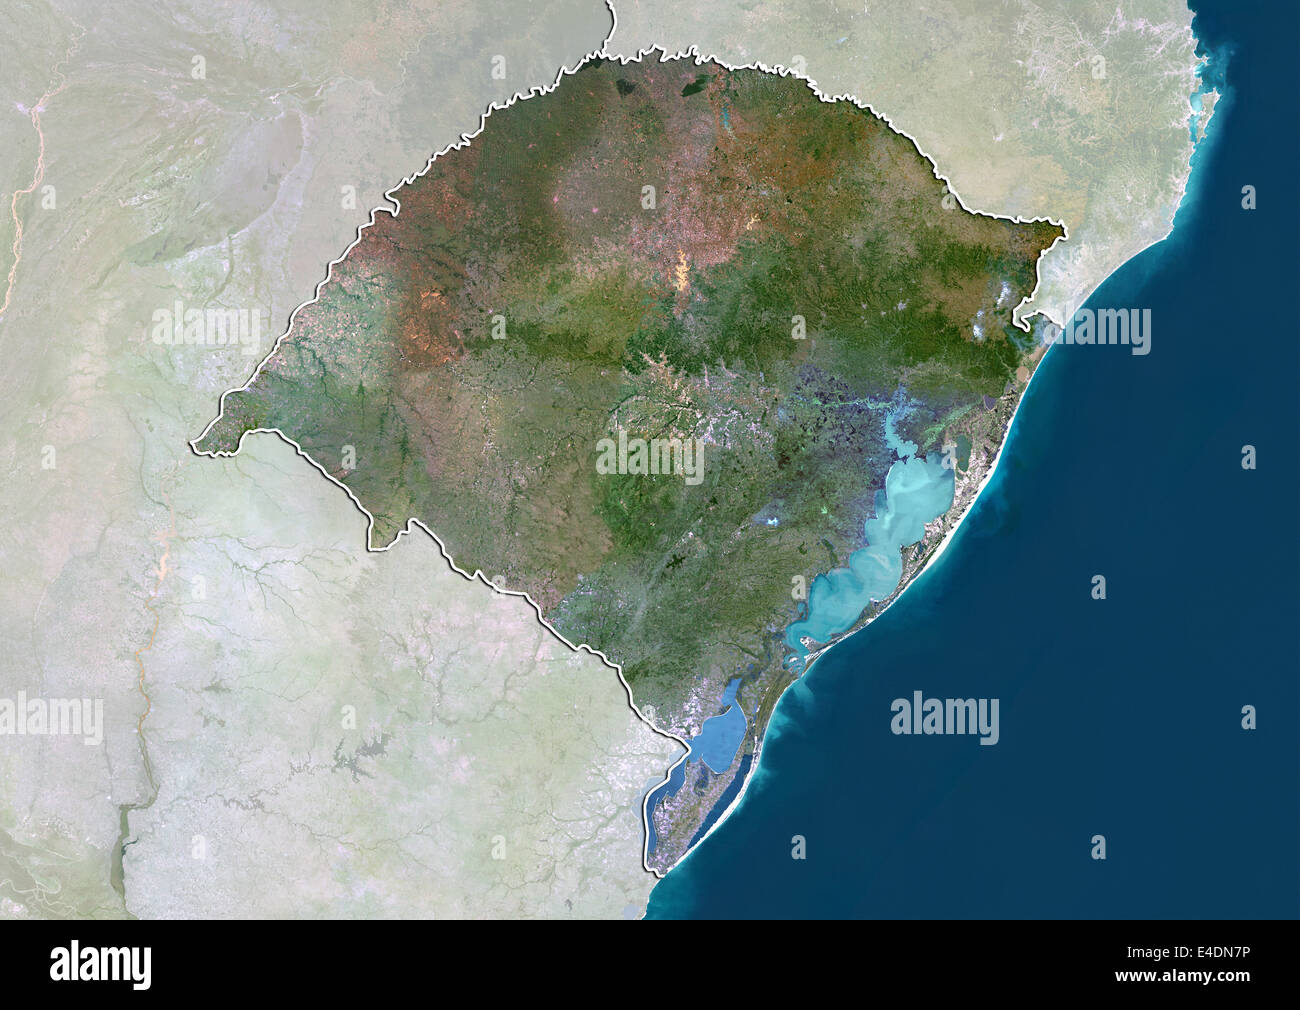 State of Rio Grande do Sul, Brazil, True Colour Satellite Image Stock Photo